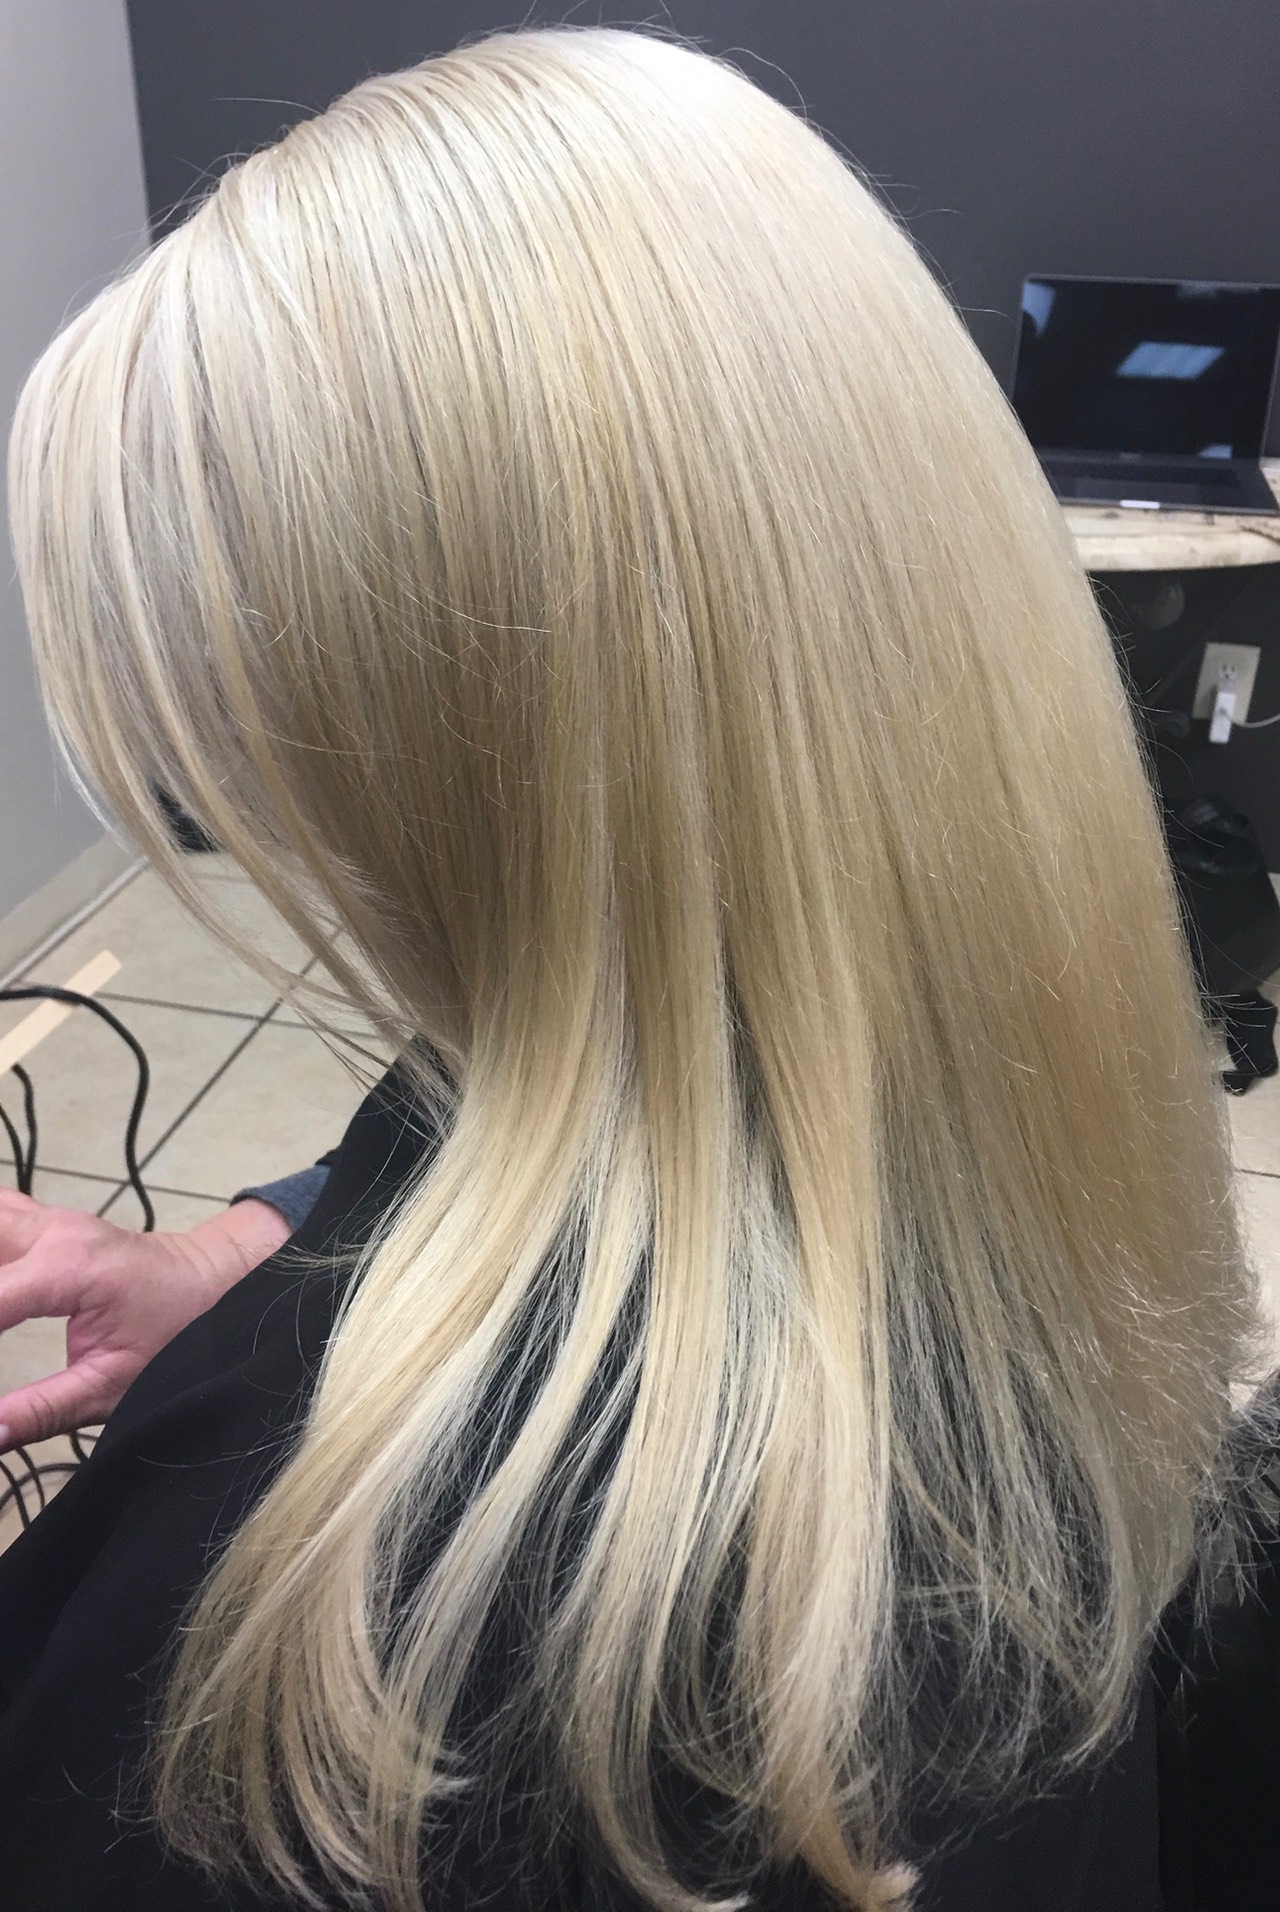 IMG_20150809_114927  Hair and beauty salon, Bleach blonde hair, Hair color  for women